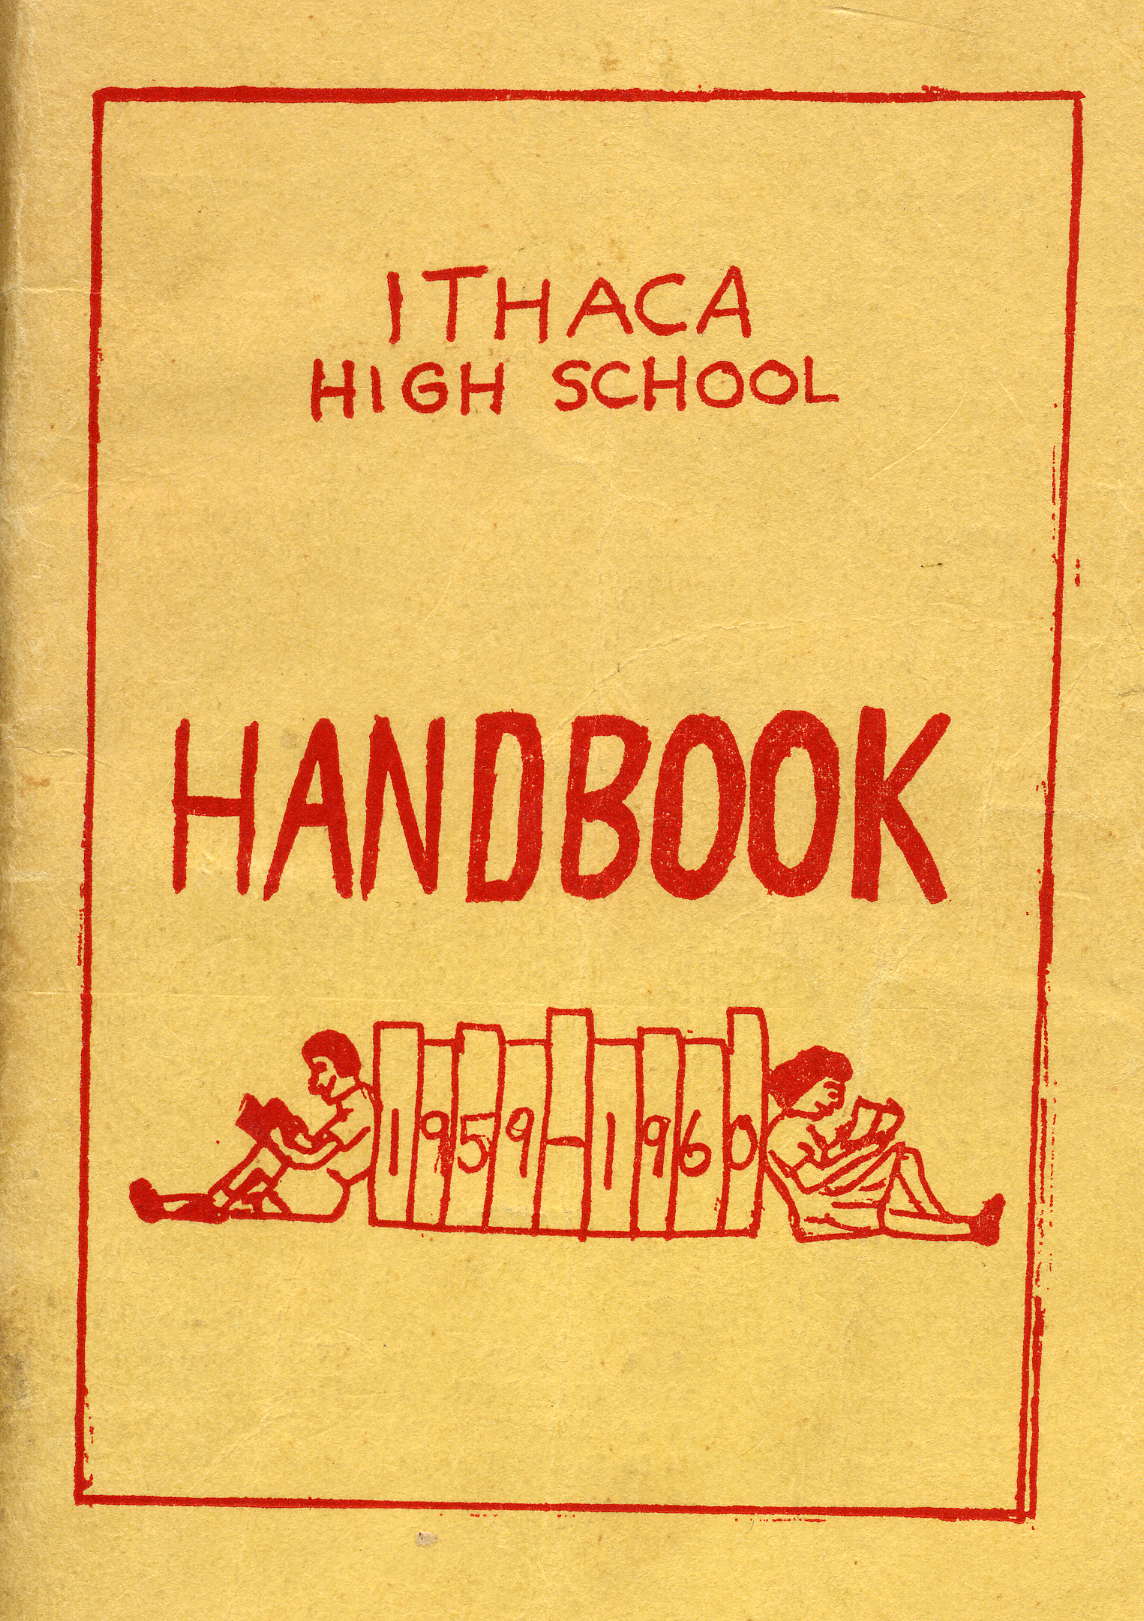 IHS Student Handbook